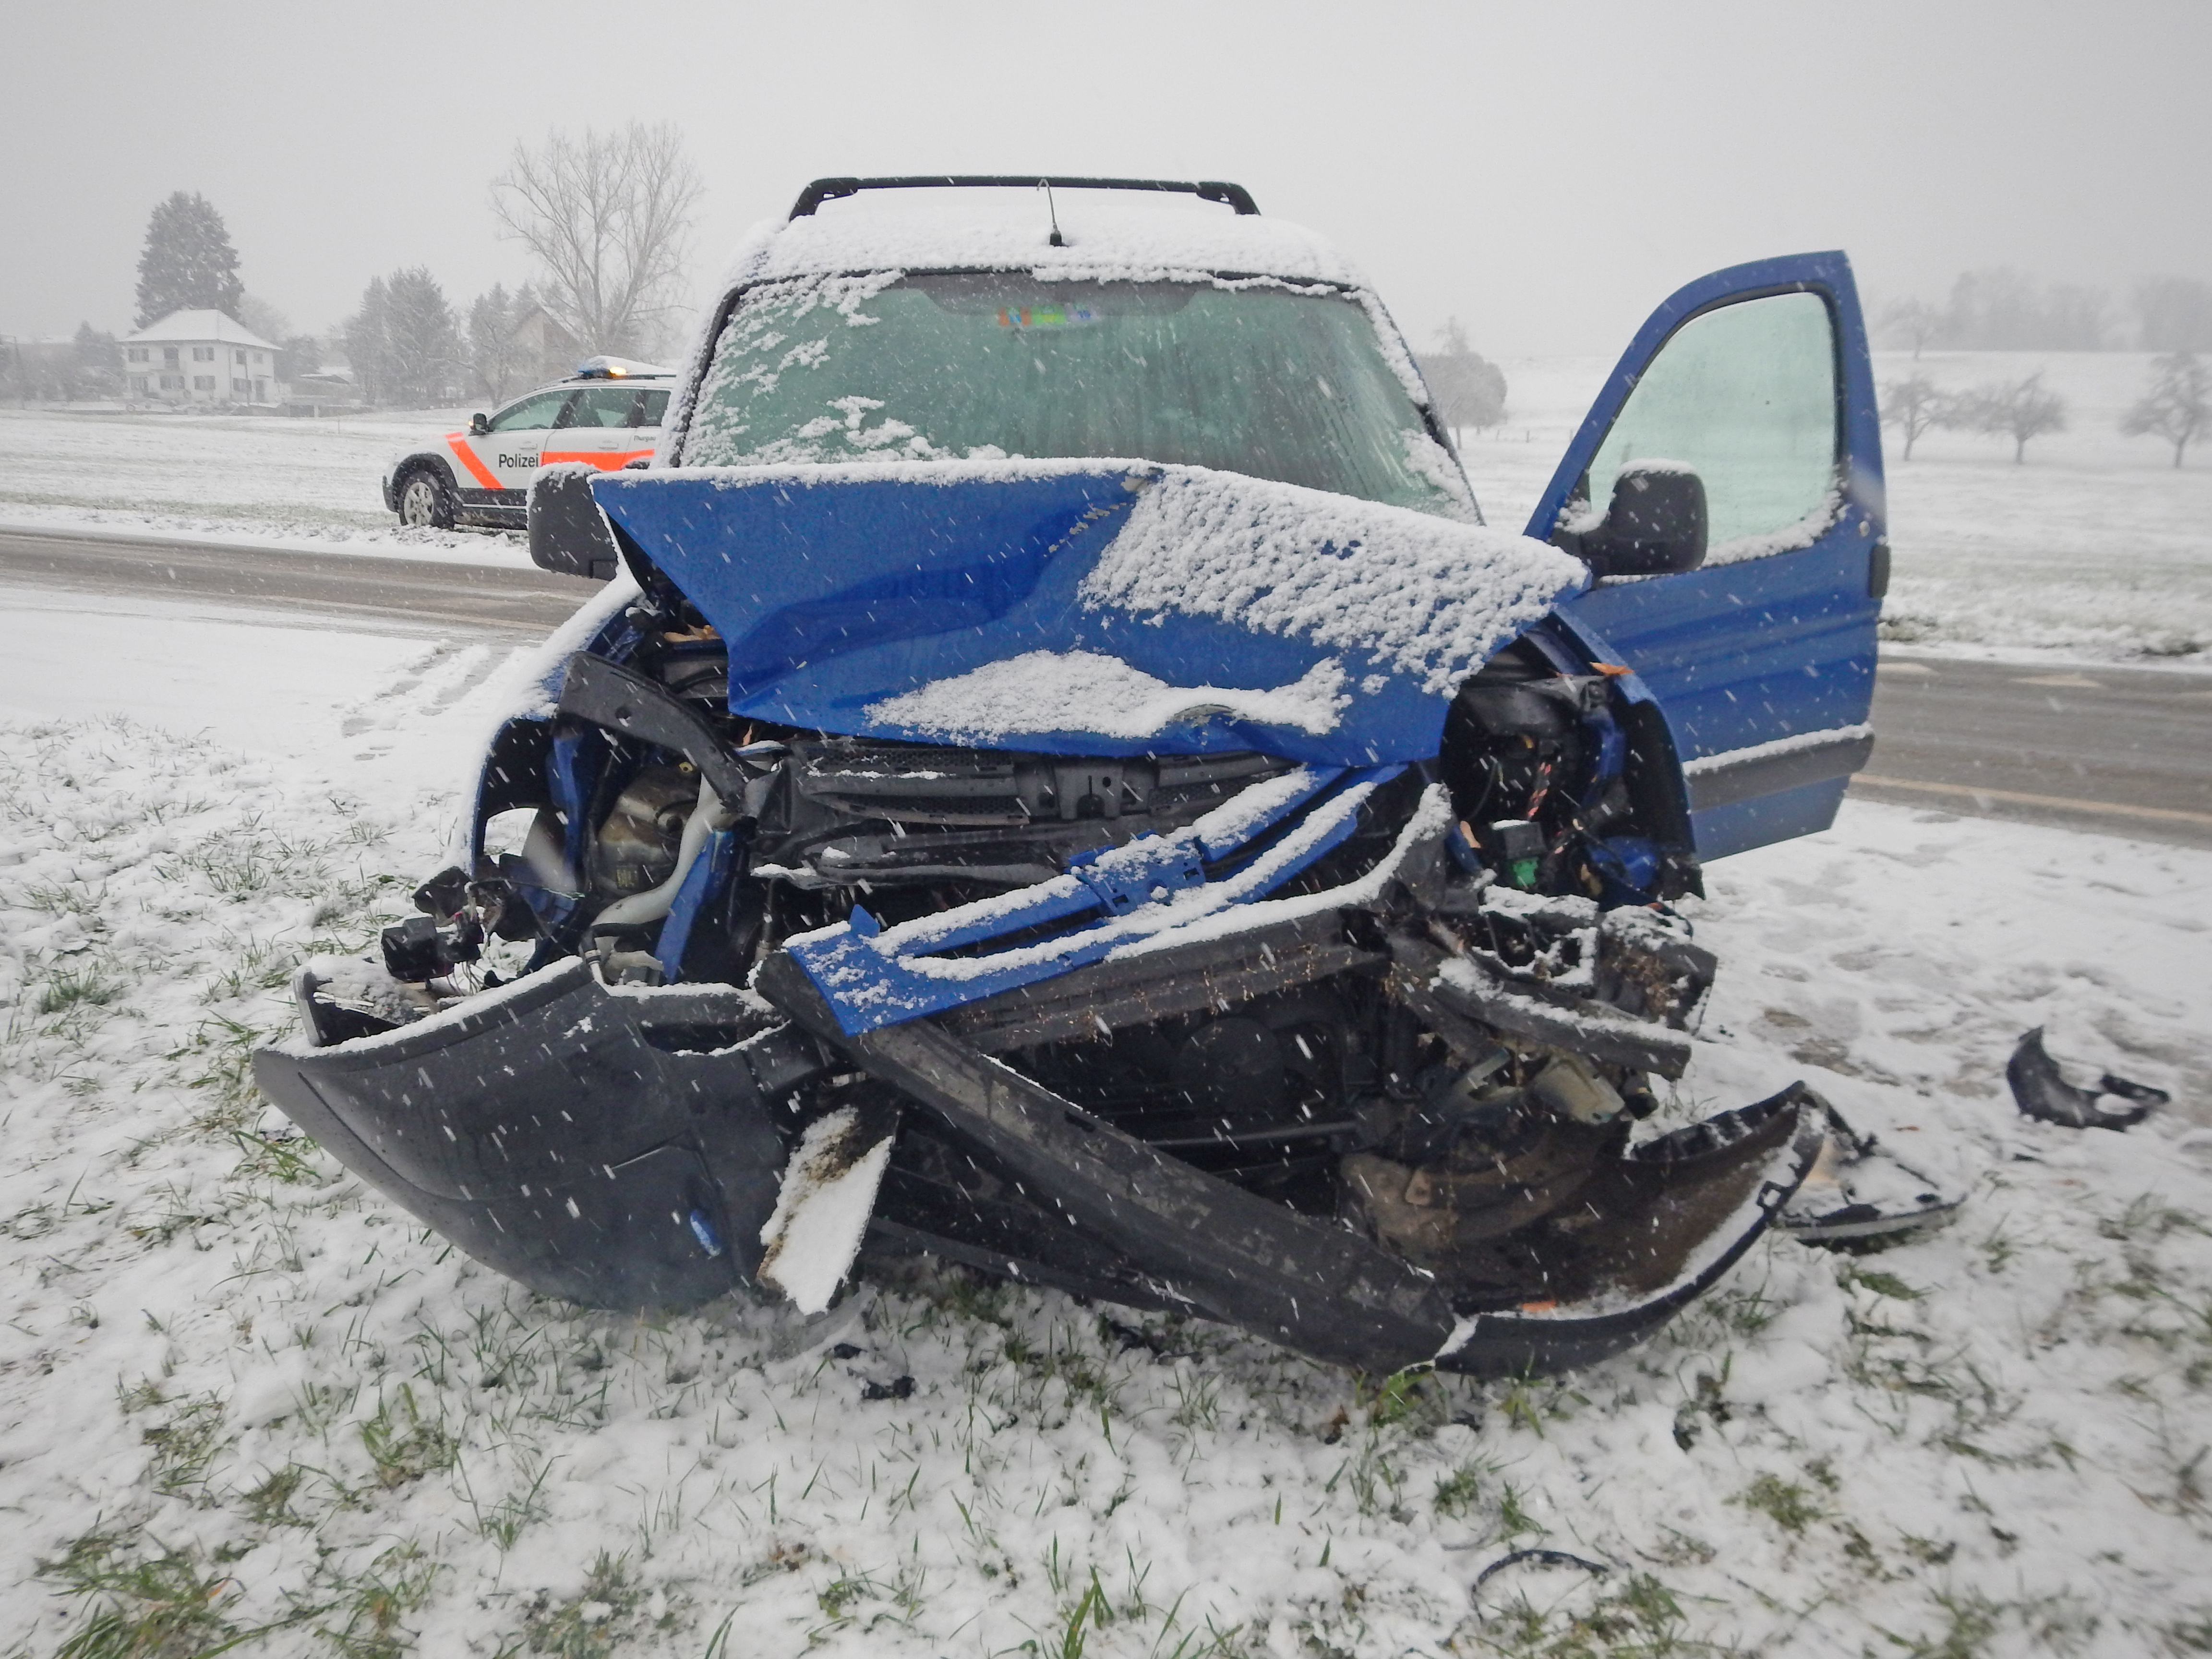 Fahrzeug mit Totalschaden, schneebedeckte Strasse, im Hintergrund ein Polizeifahrzeug.